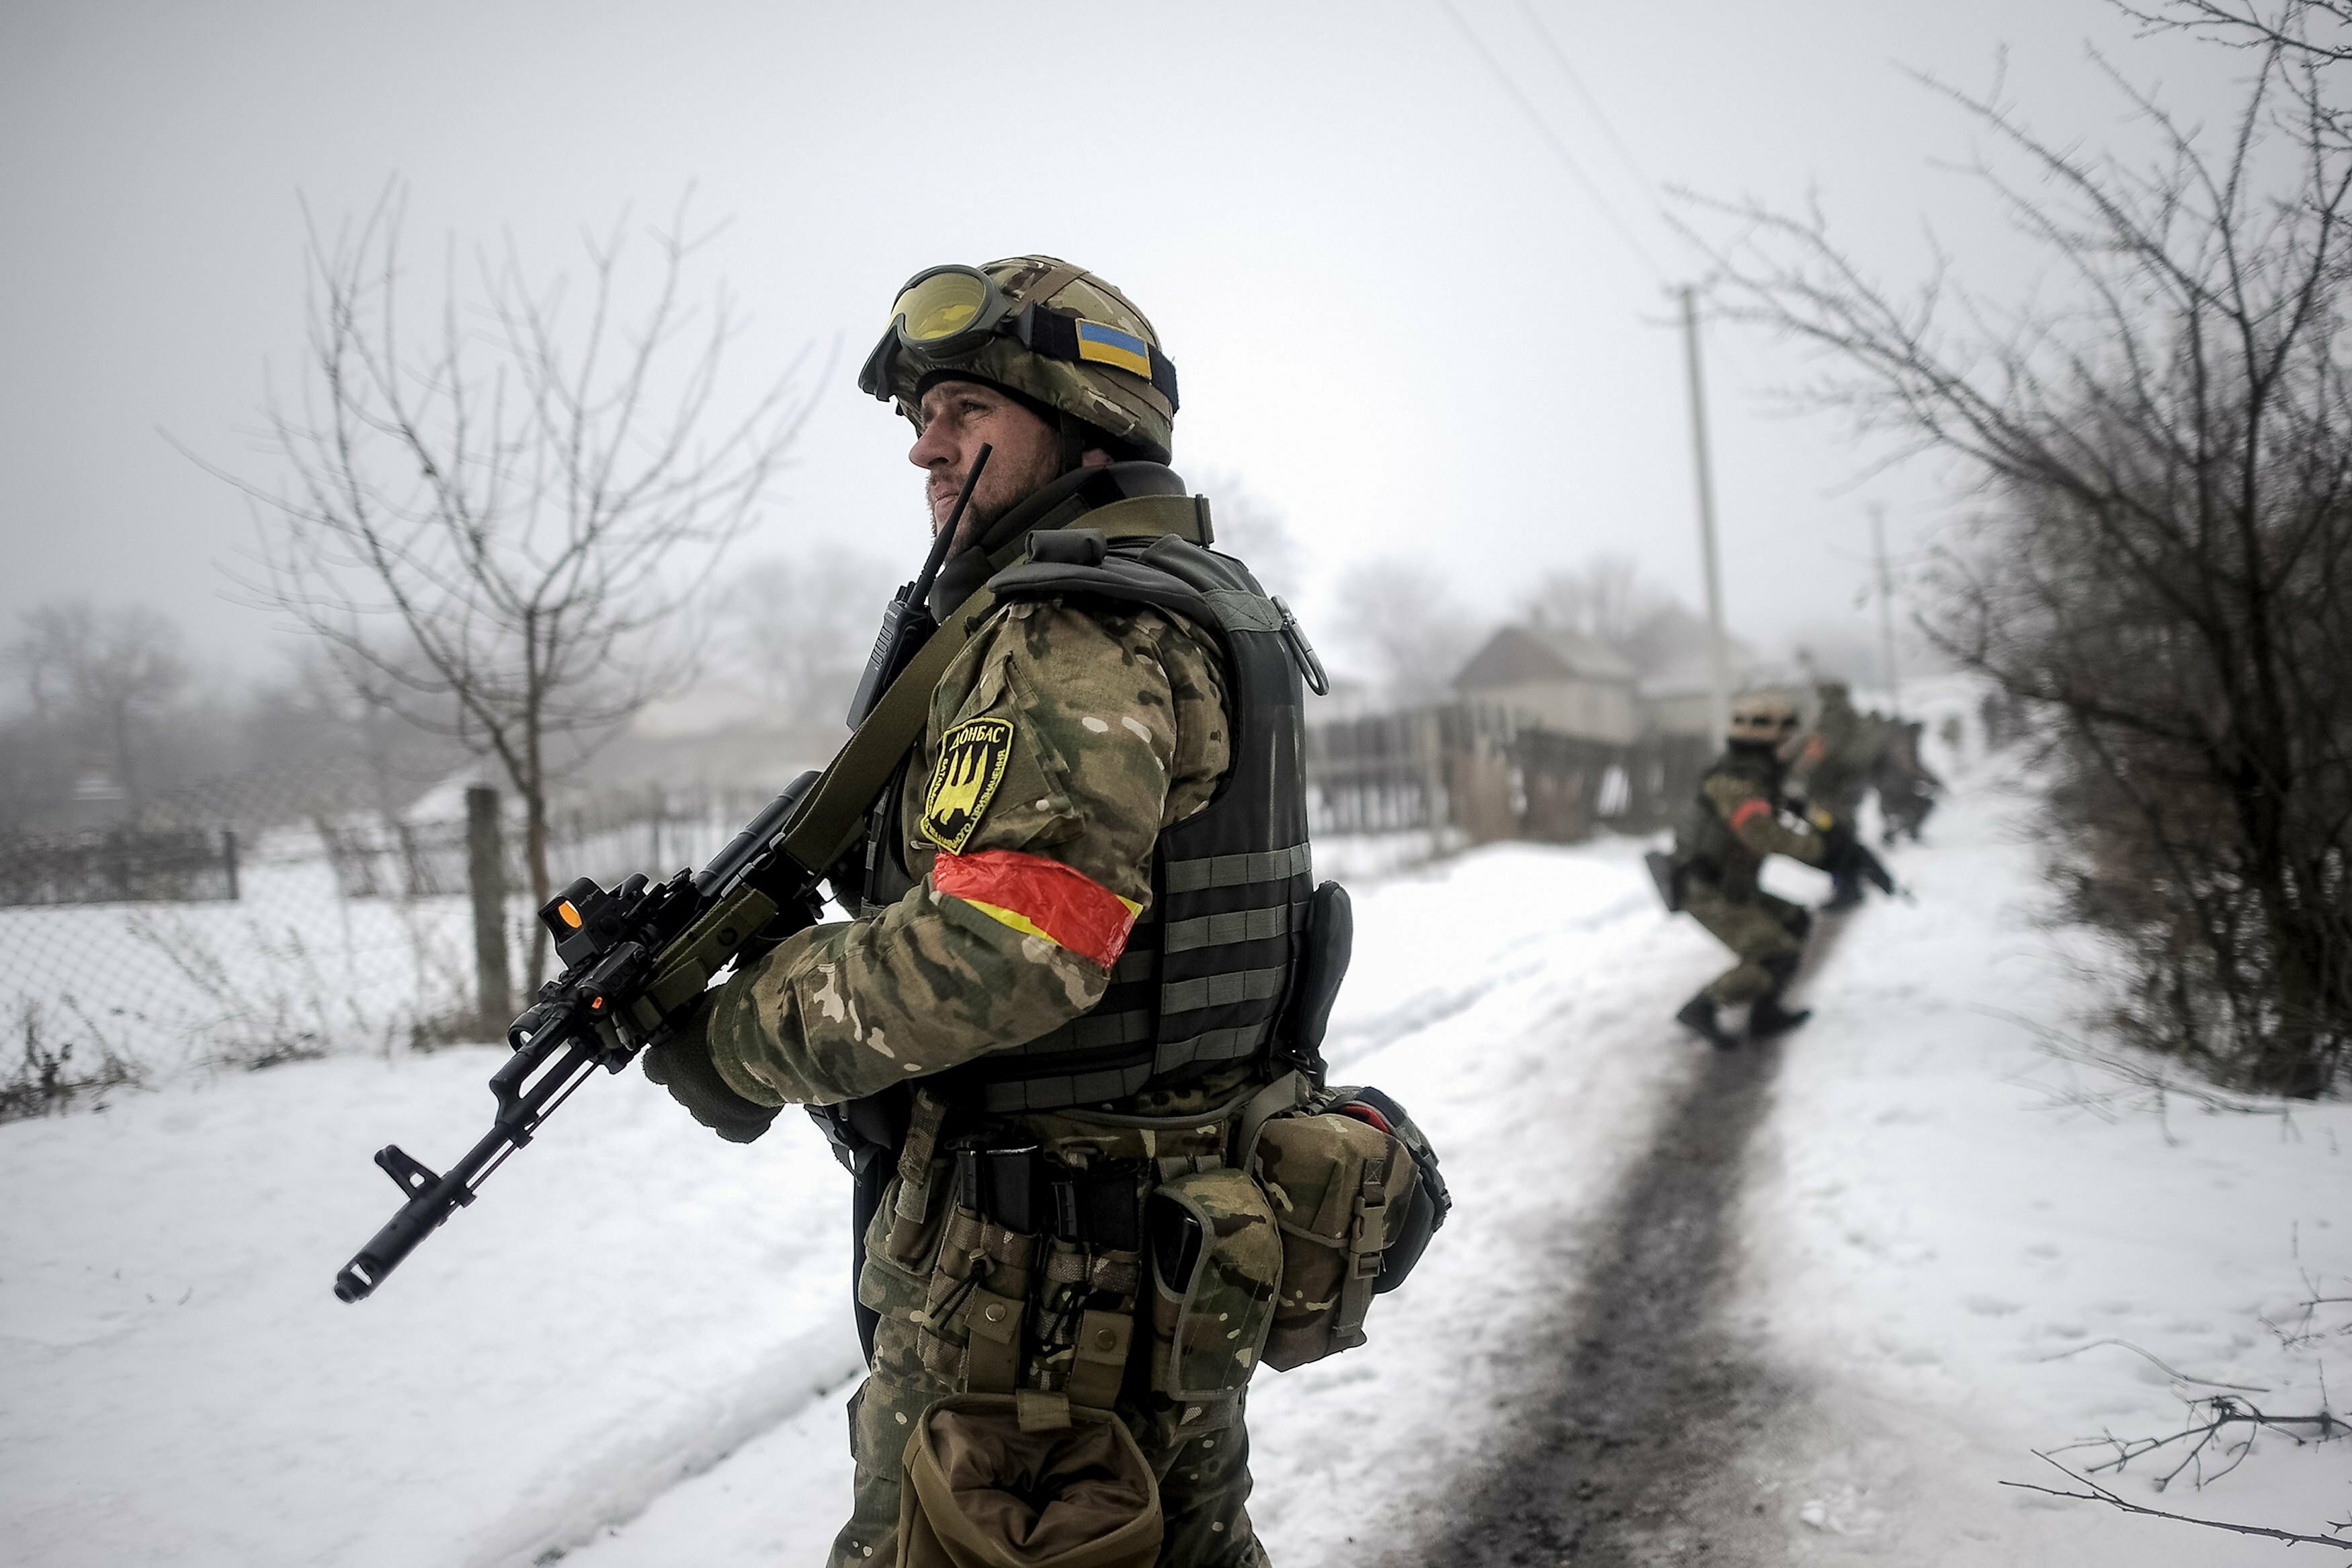 Эксперт предсказал, когда ВСУ начнут наступать на Донбасс: "Это будет другая война"